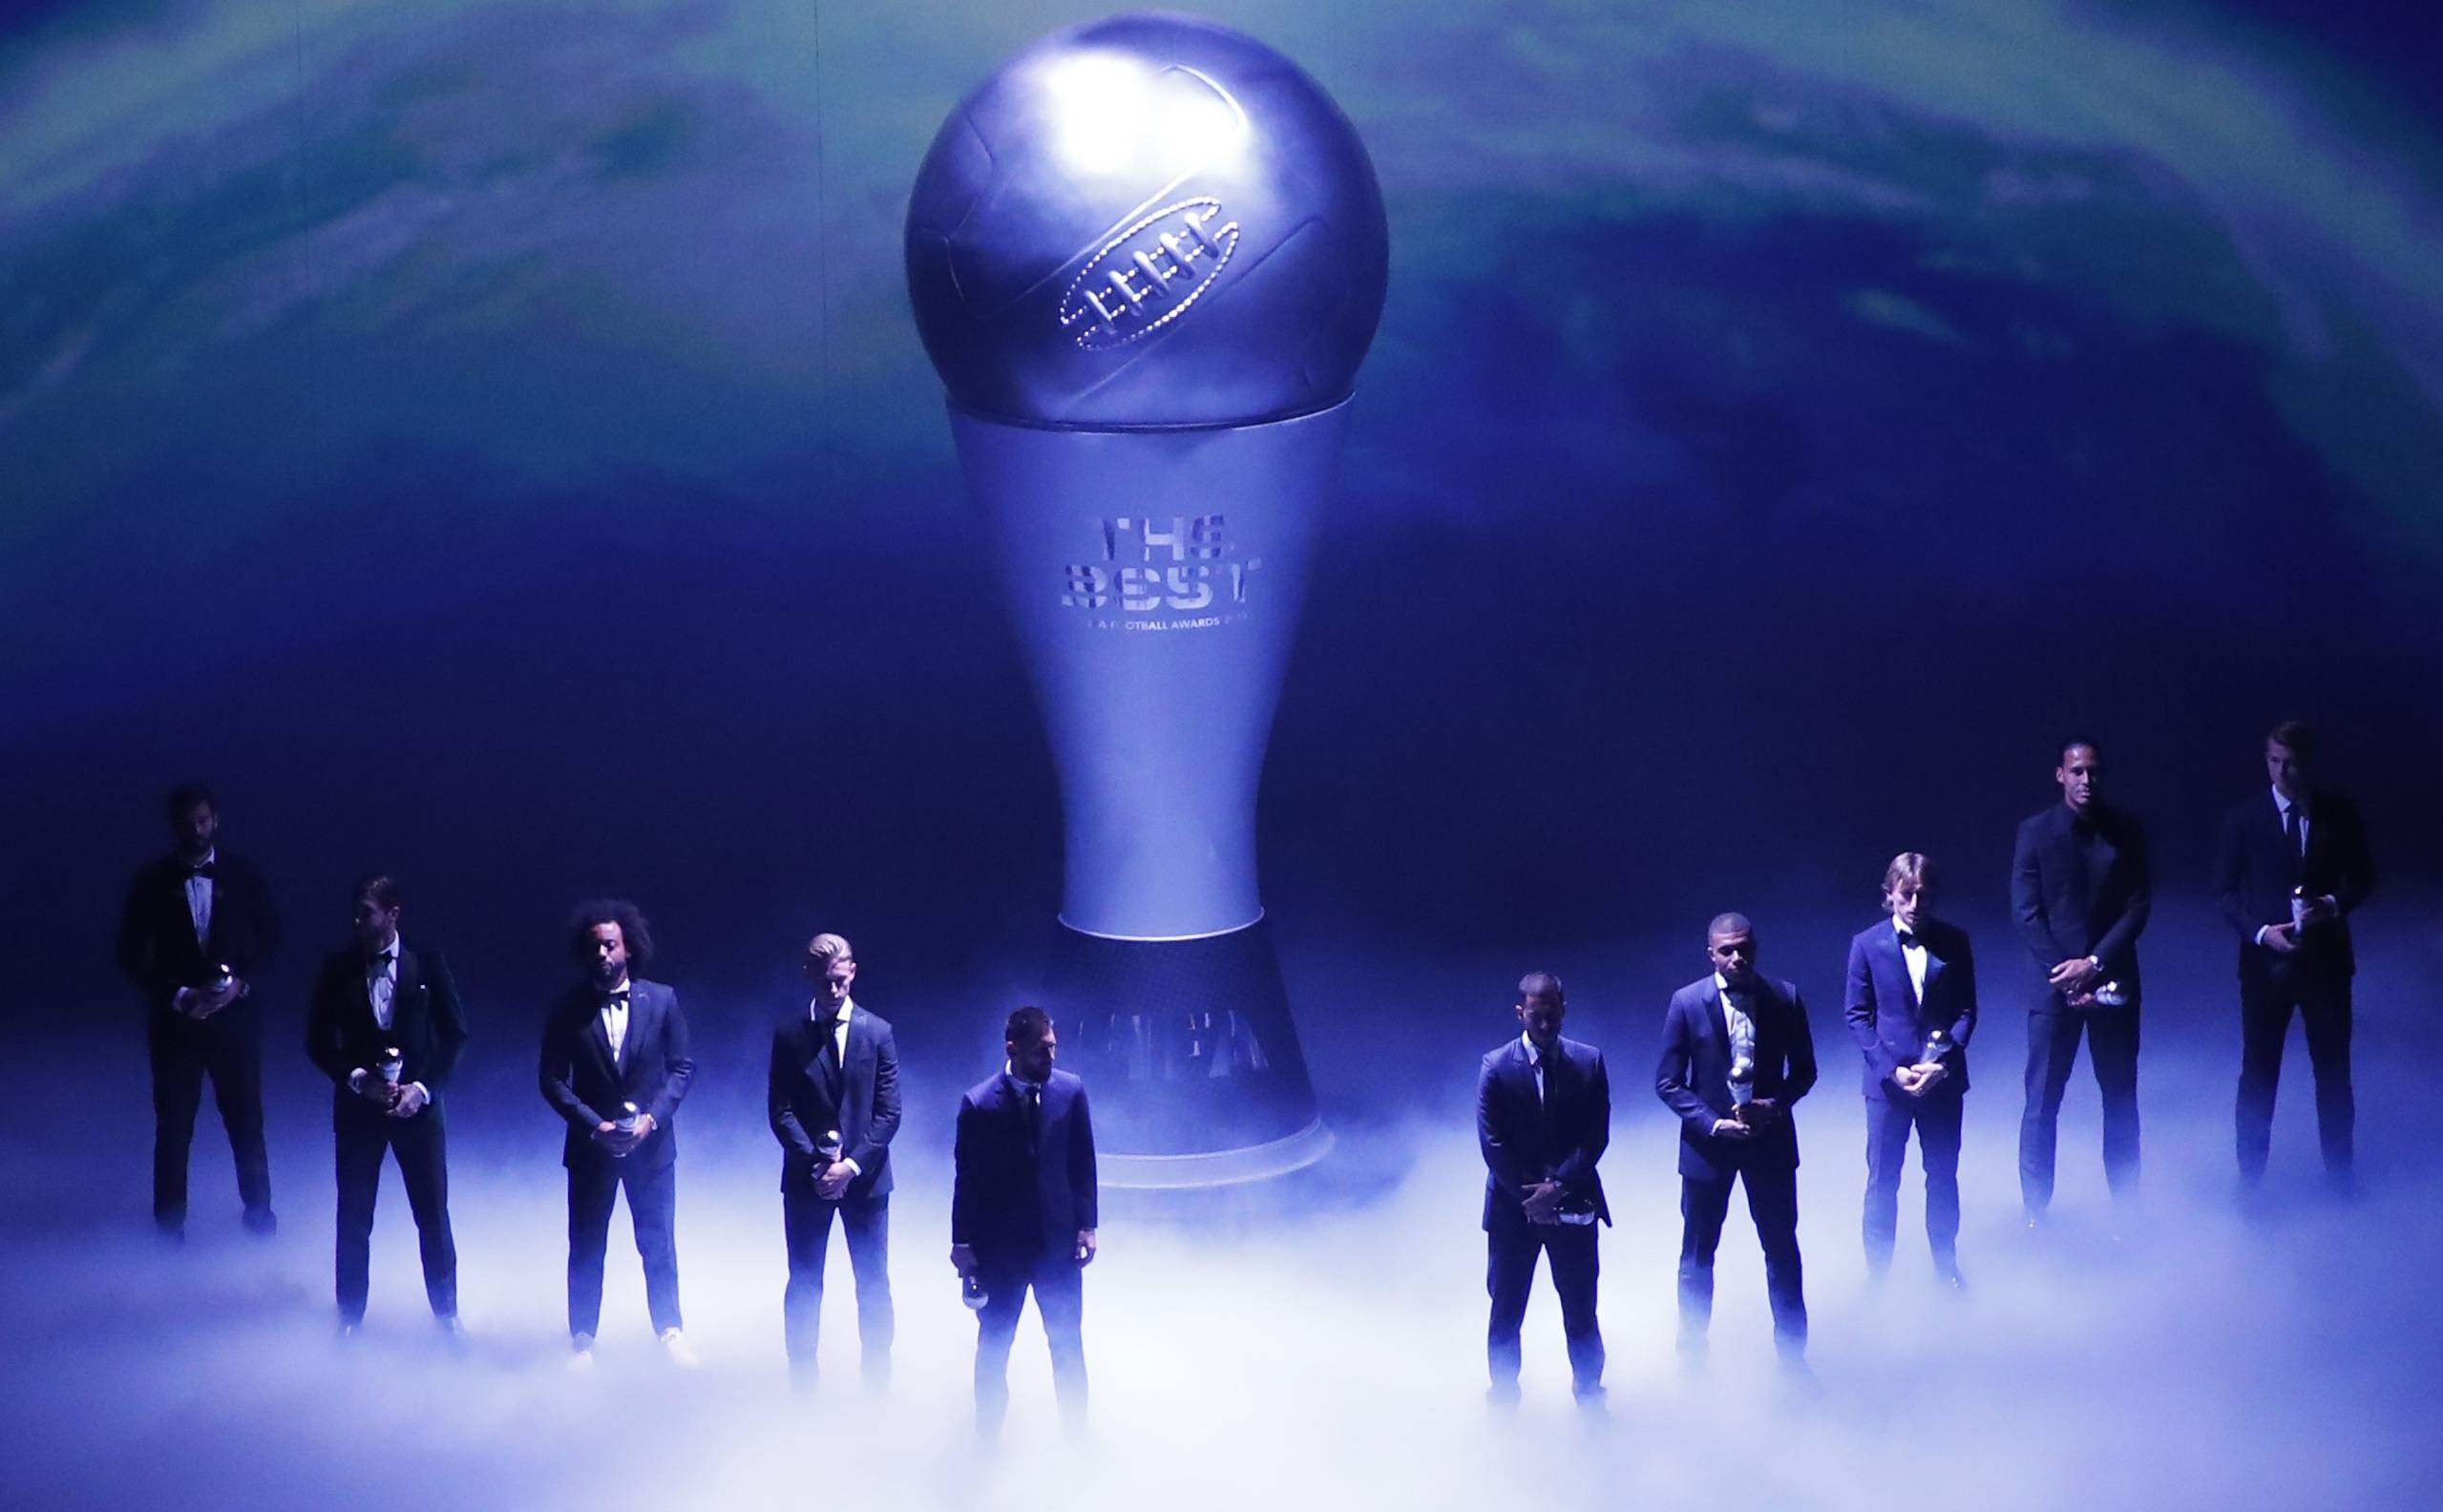 FIFA Awards "data-caption =" FIFA FIFPro World11 2019 "data-source =" @ timesnownews.com